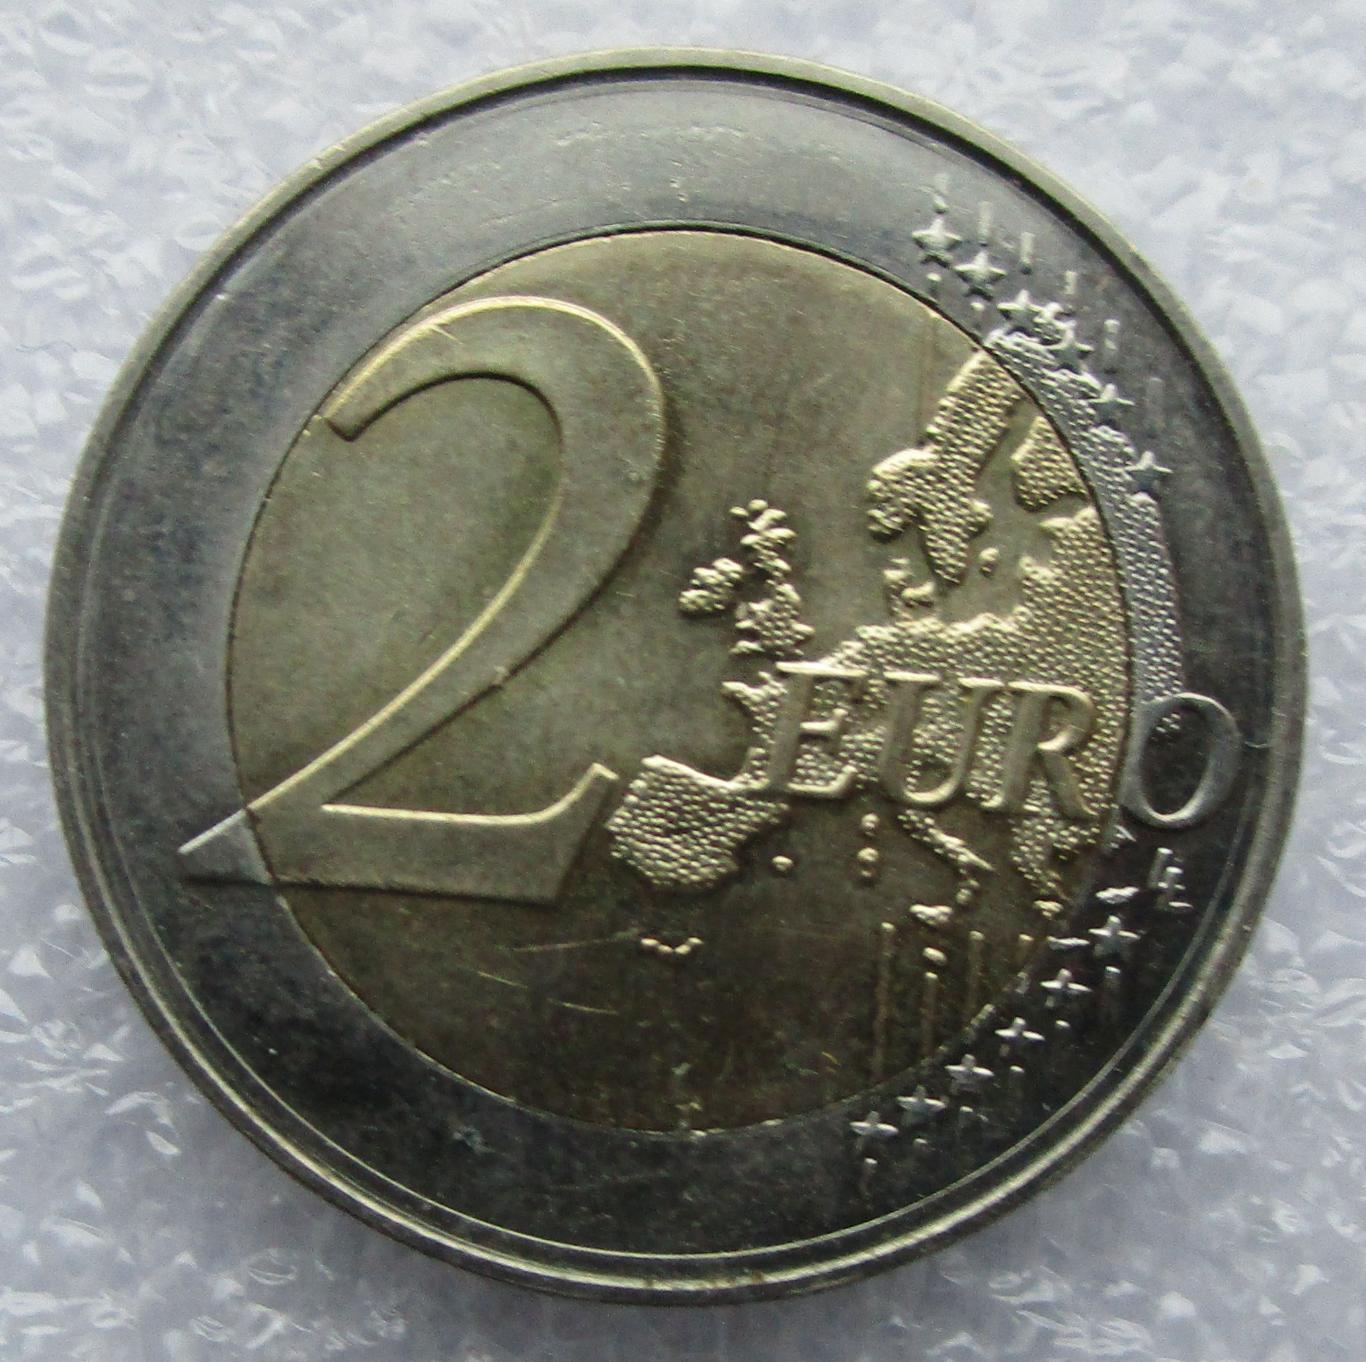 Словакия 2 Евро 2009. UNC. Штемпельный блеск. 3